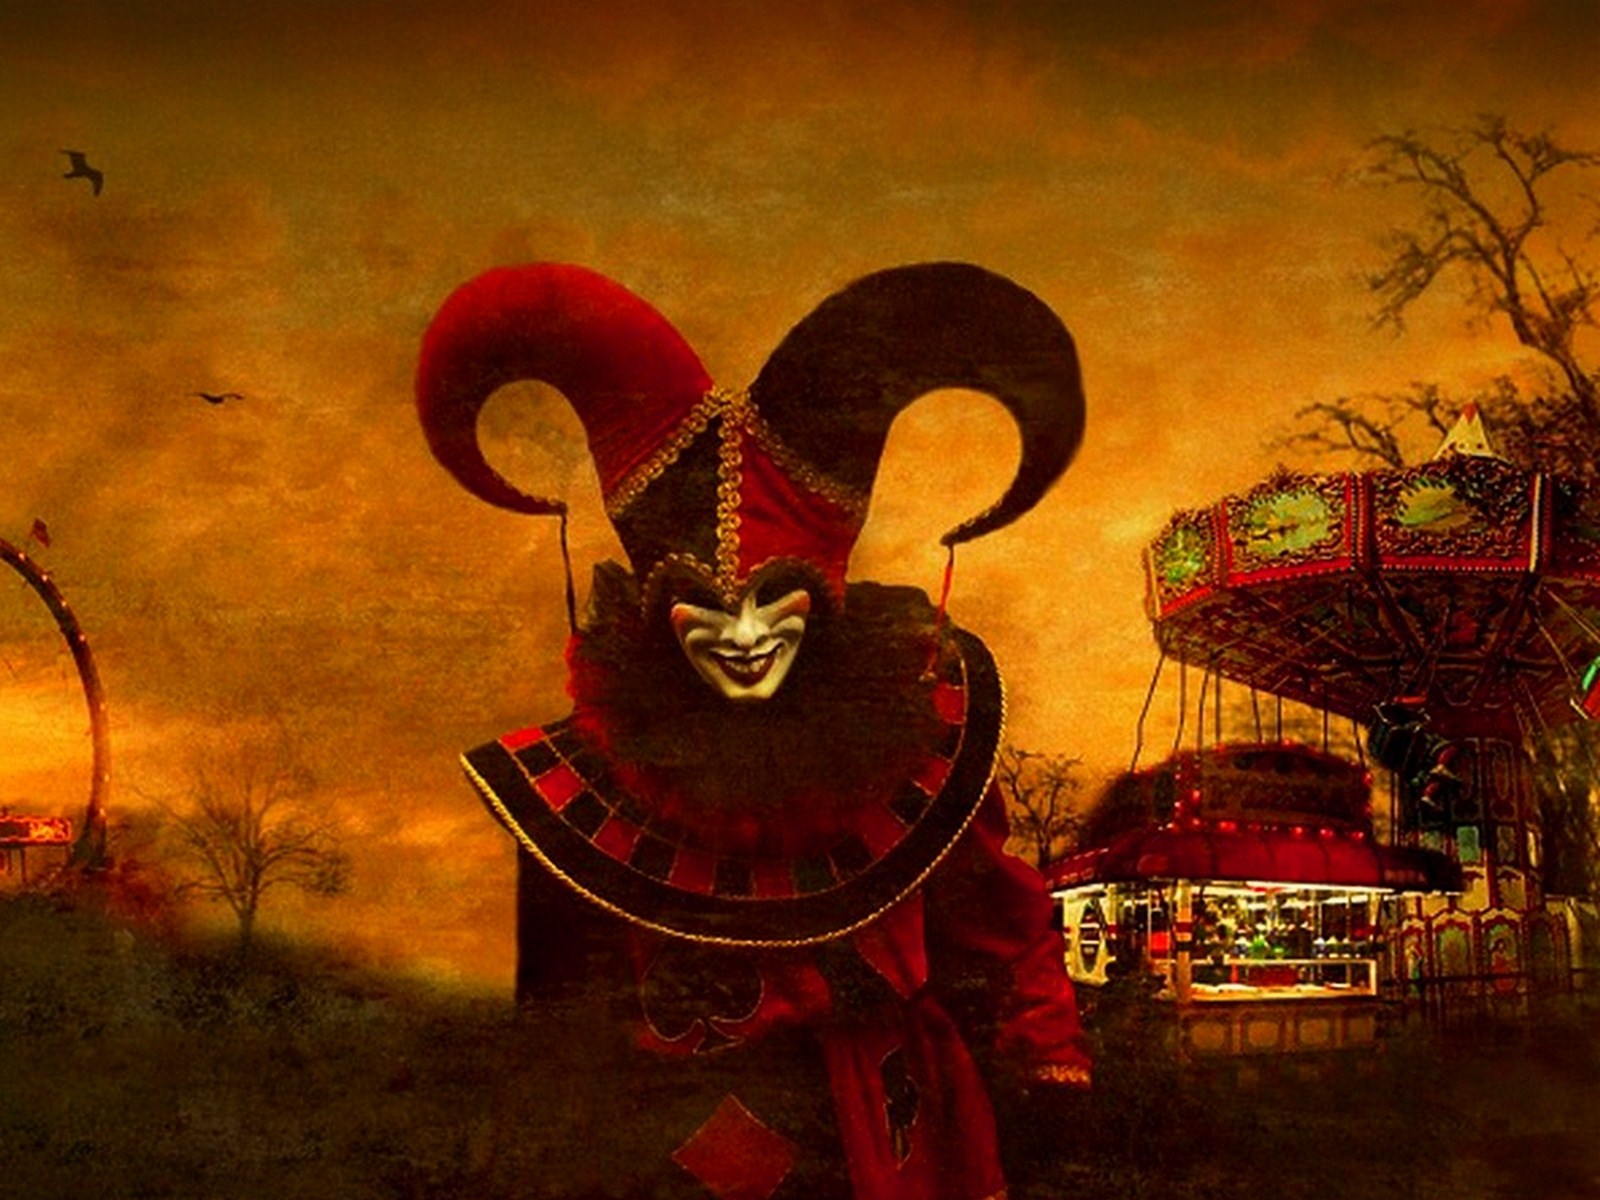 Scary Clown Wallpaper HD Resolution - Uncalke.com